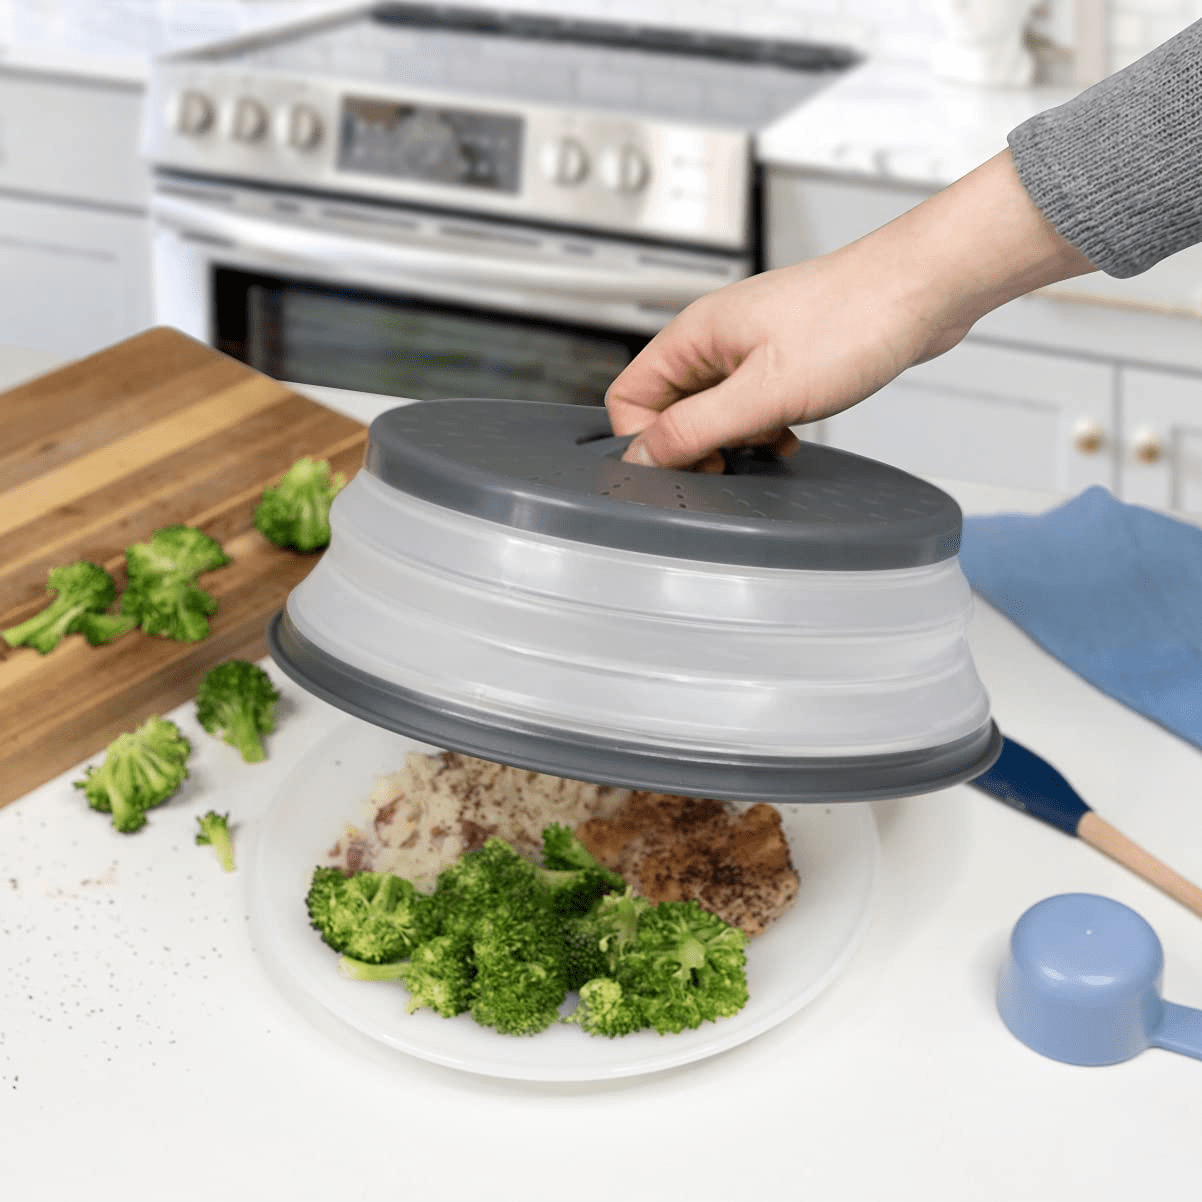 Microwave Splatter Cover Vented for Food, Splatter Guard & Colander Kitchen  Gadget for Fruit Vegetables Microwave Plate Cover with Hook